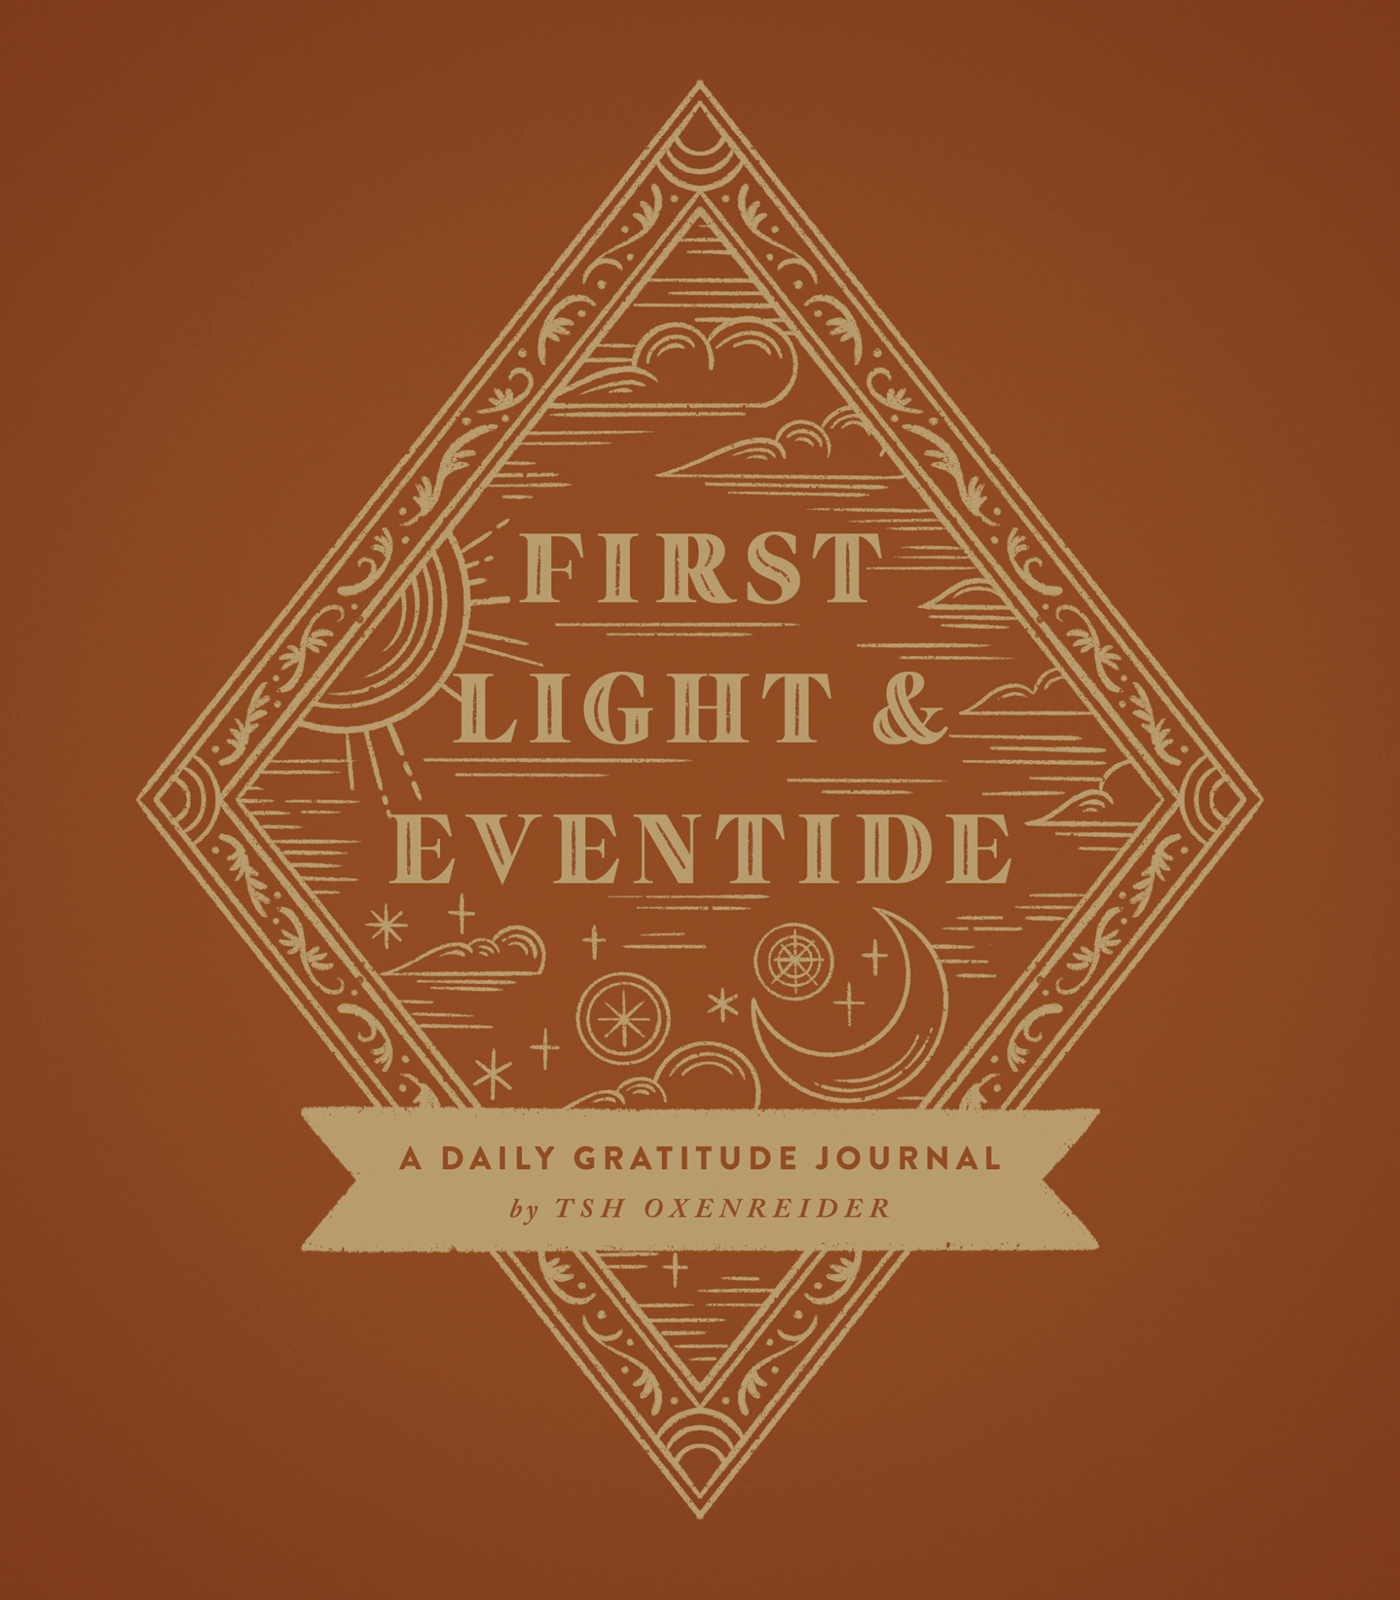 First Light & Eventide Gratitude Journal